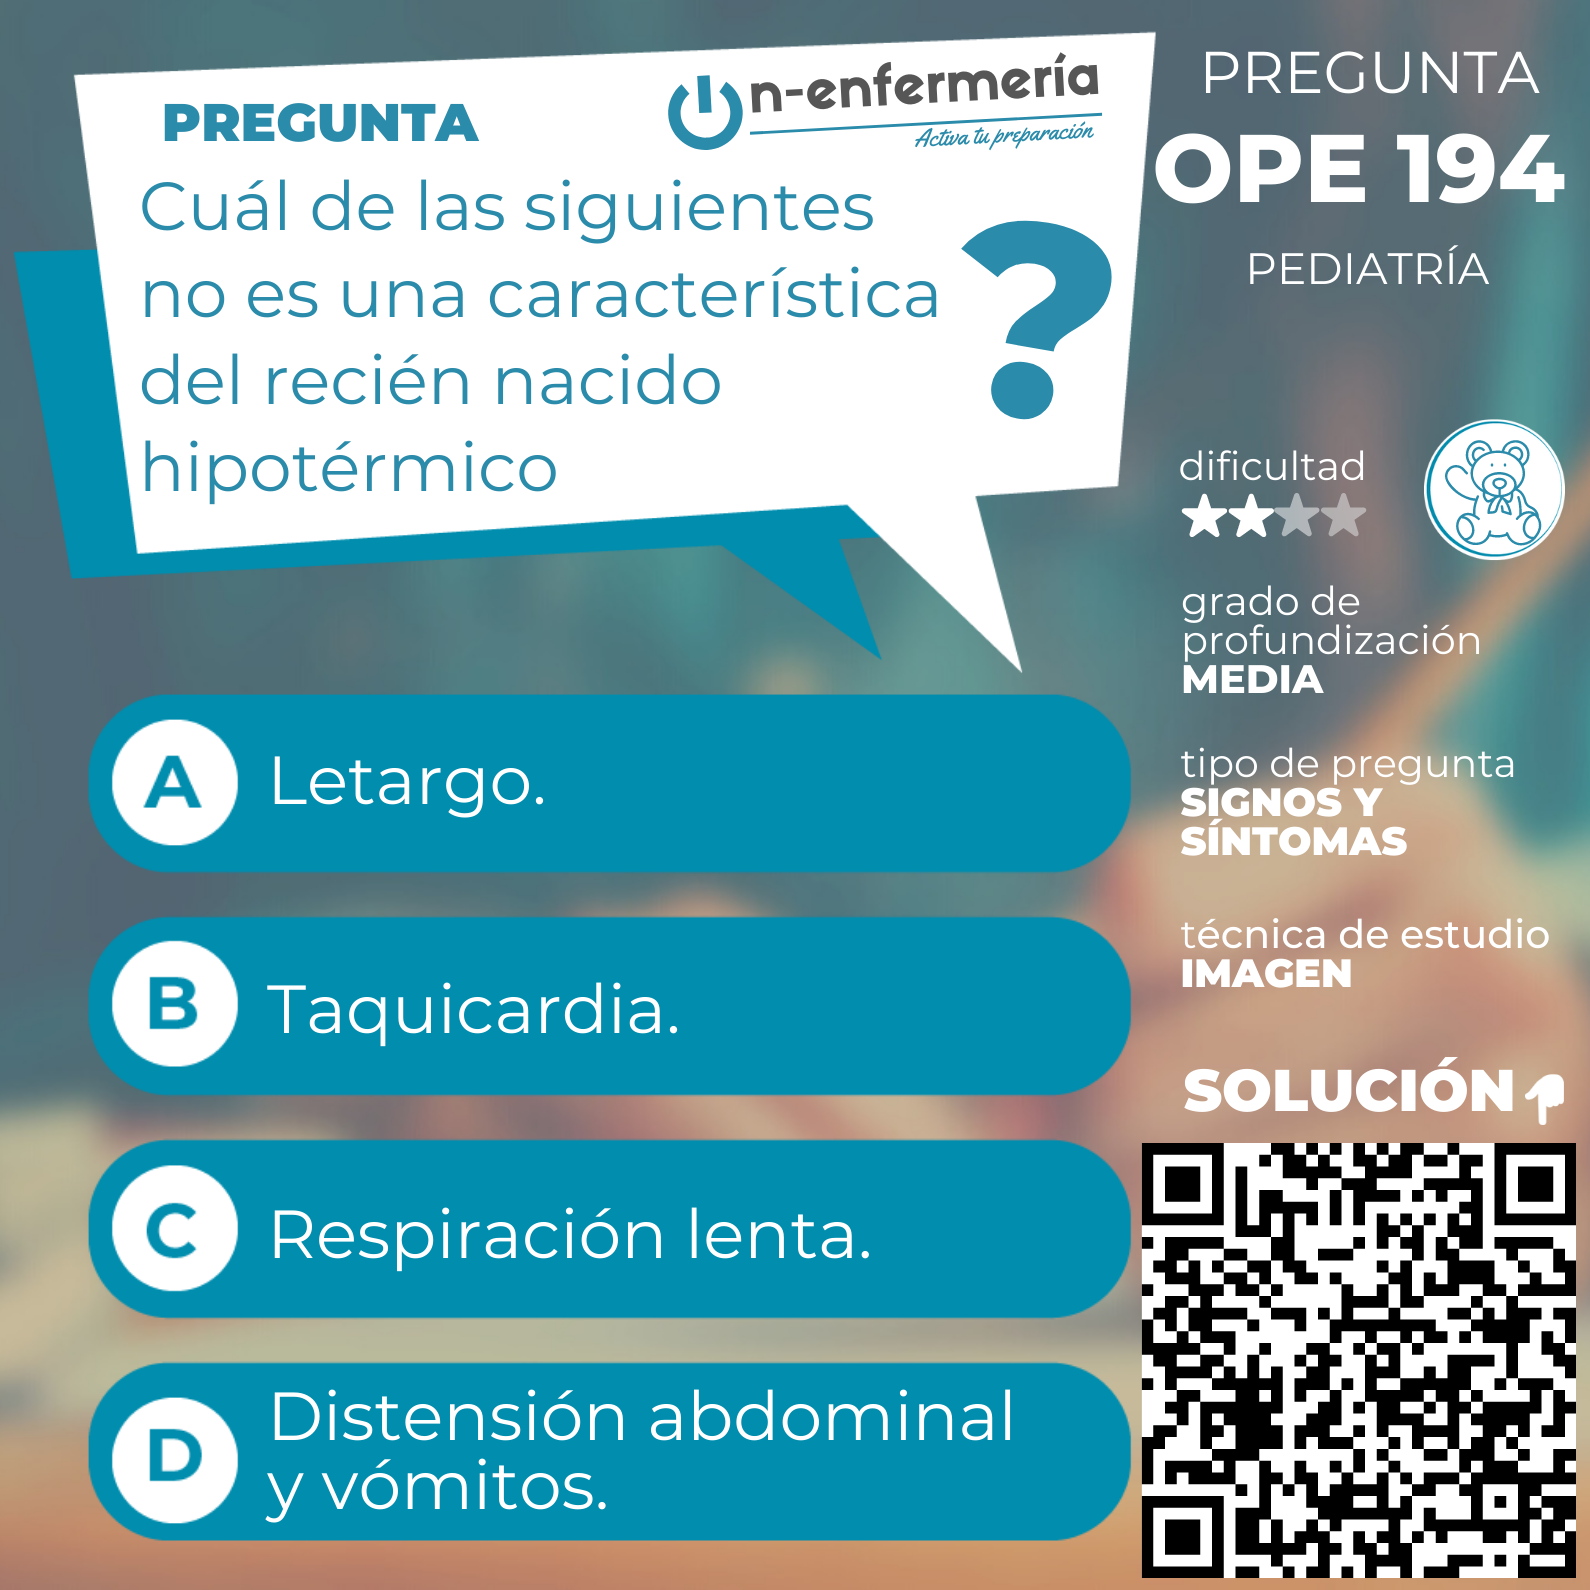 Pregunta examen OPE Enfermería nº 194 - Pediatría - EIR